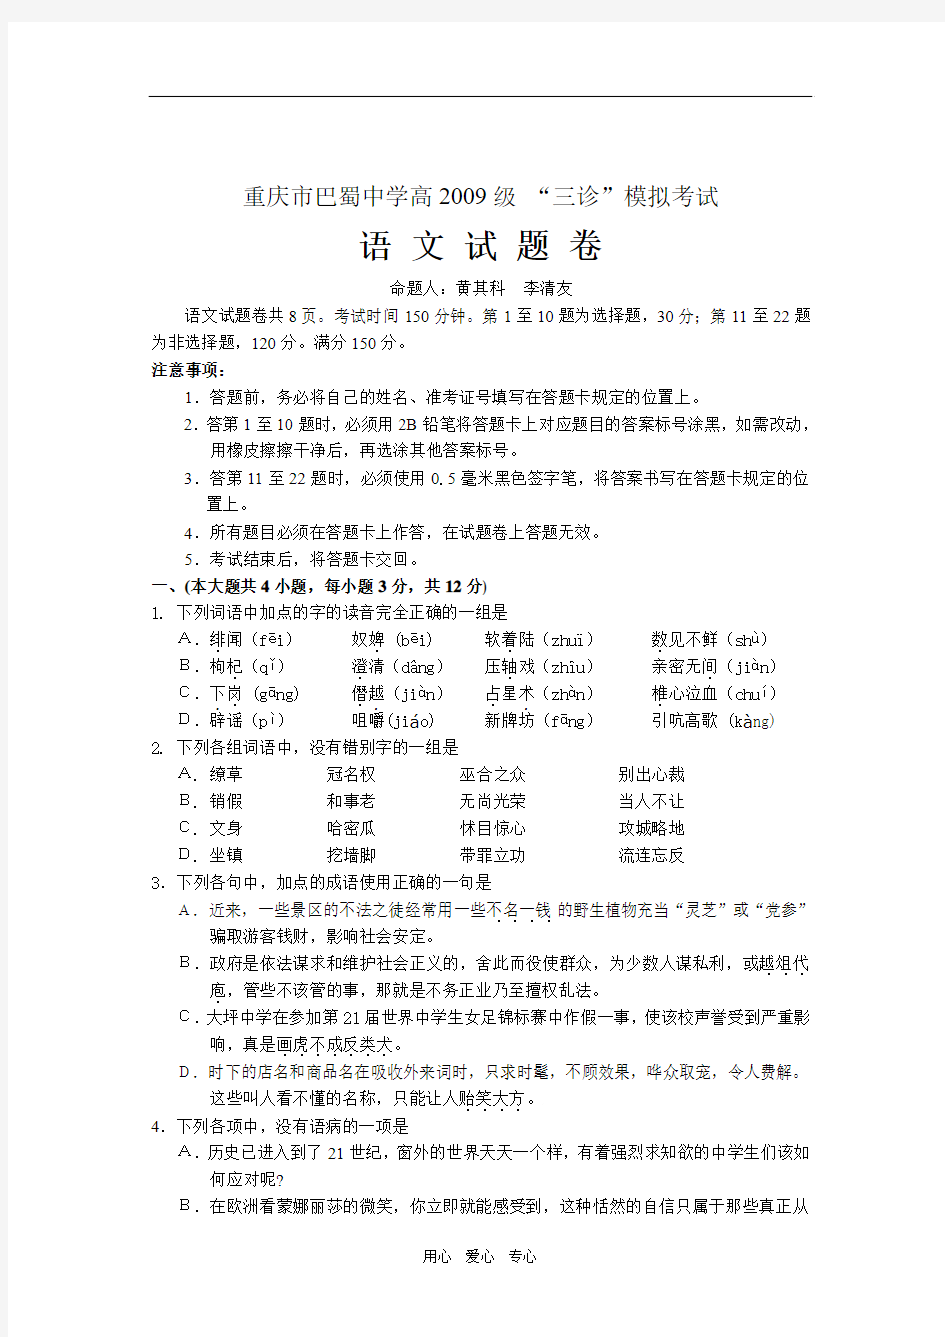 重庆市巴蜀中学高2009级高三语文“三诊”模拟考试(五月)